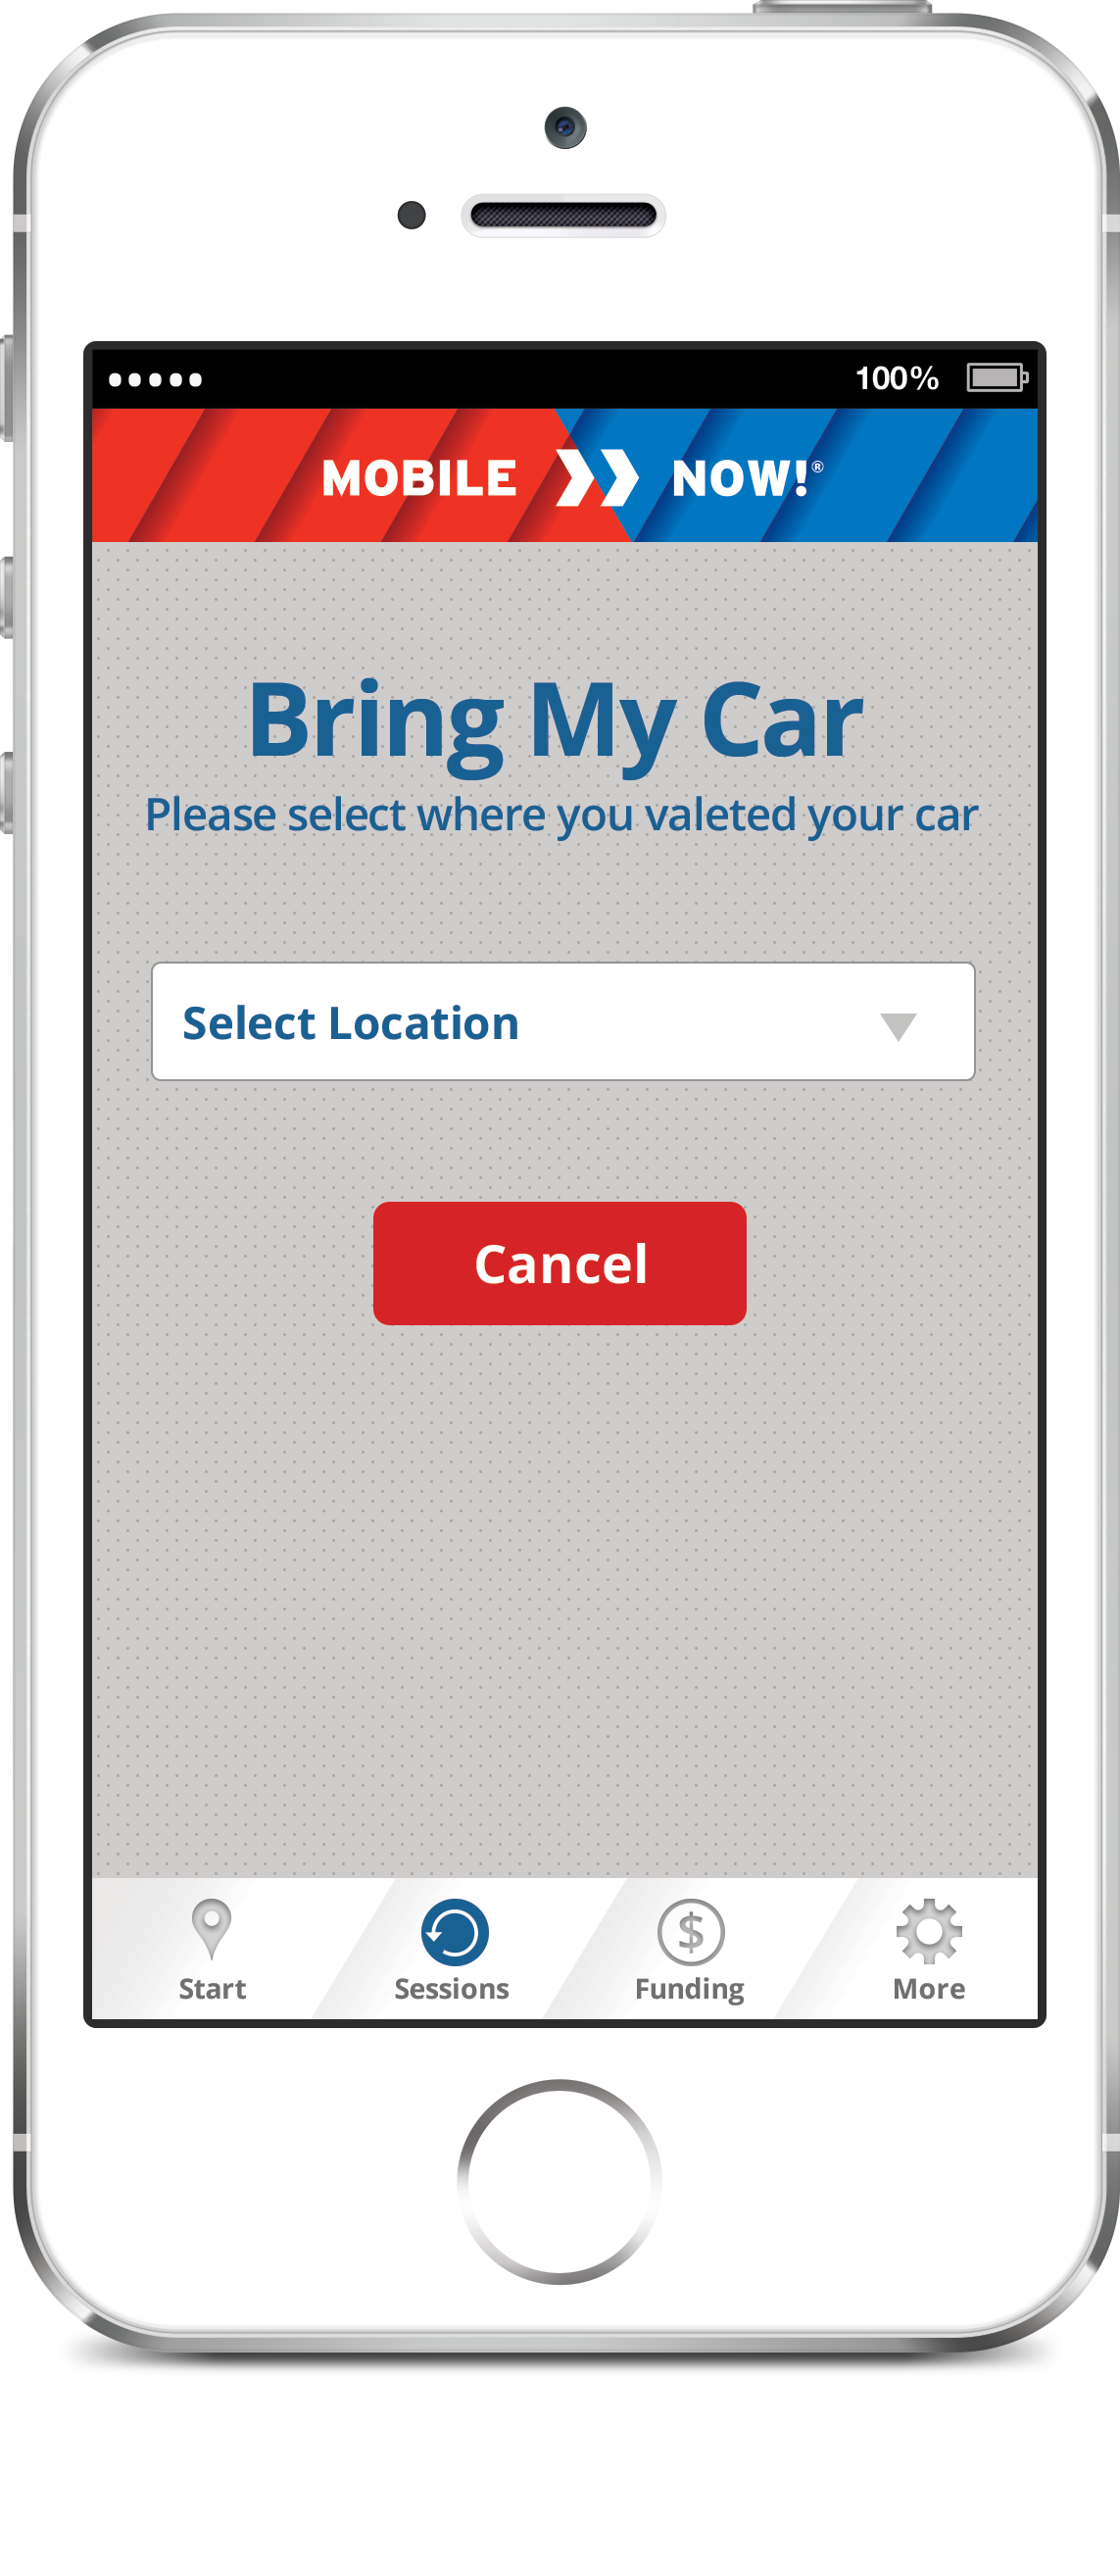 Mobile App for Valet Parking 